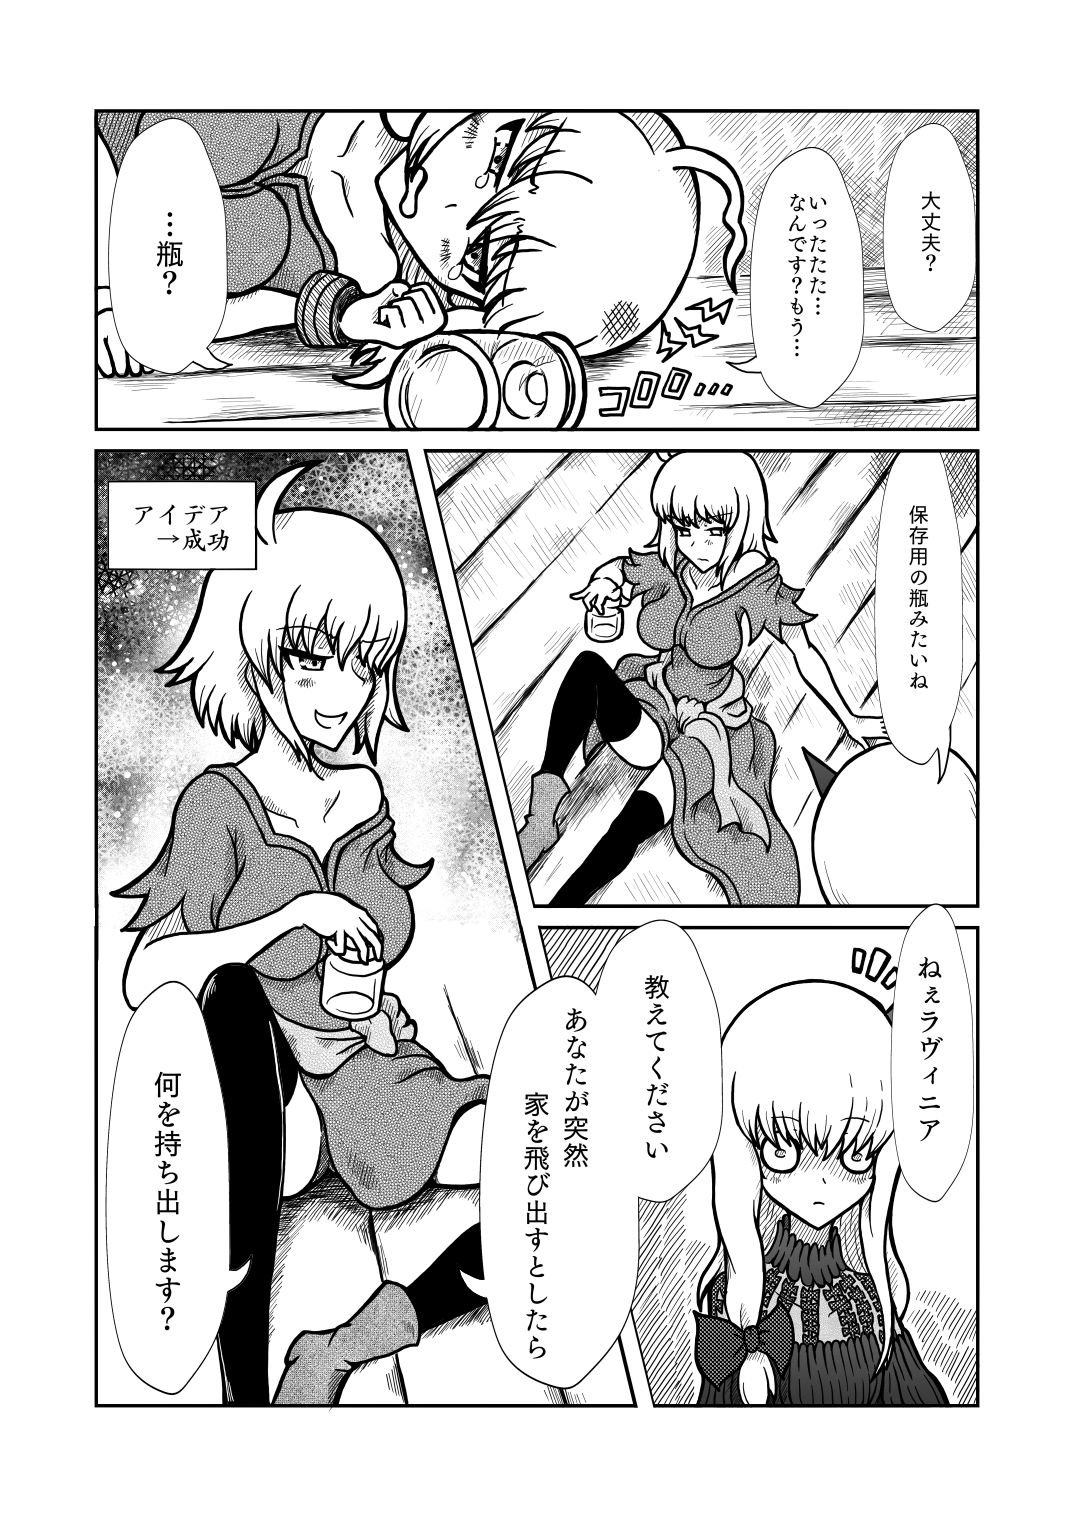 [Shigato] Jeanne x Lavi Dunwich Kai Kikou (Fate/Grand Order, Cthulhu Mythos) [Digital] 19